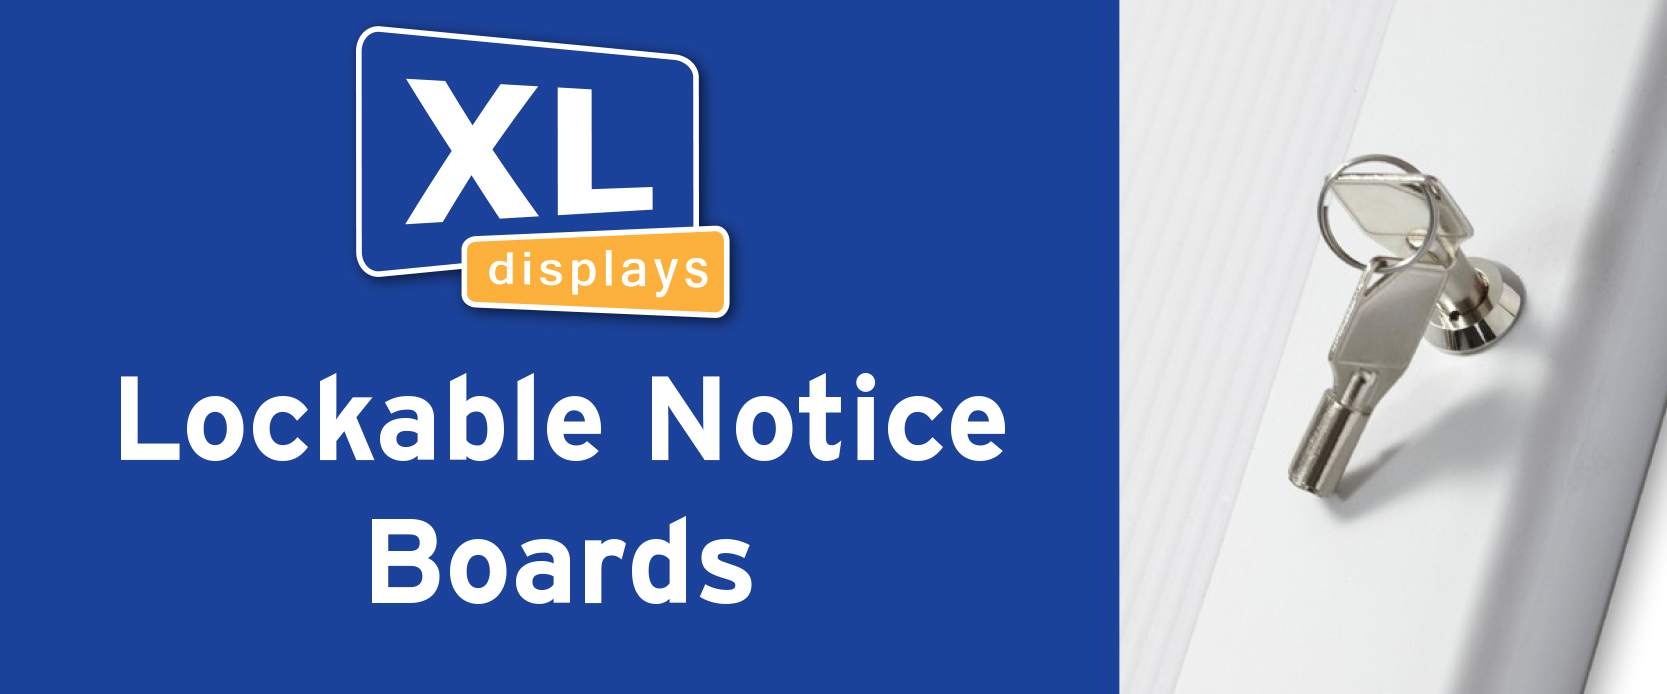 Lockable Notice Boards